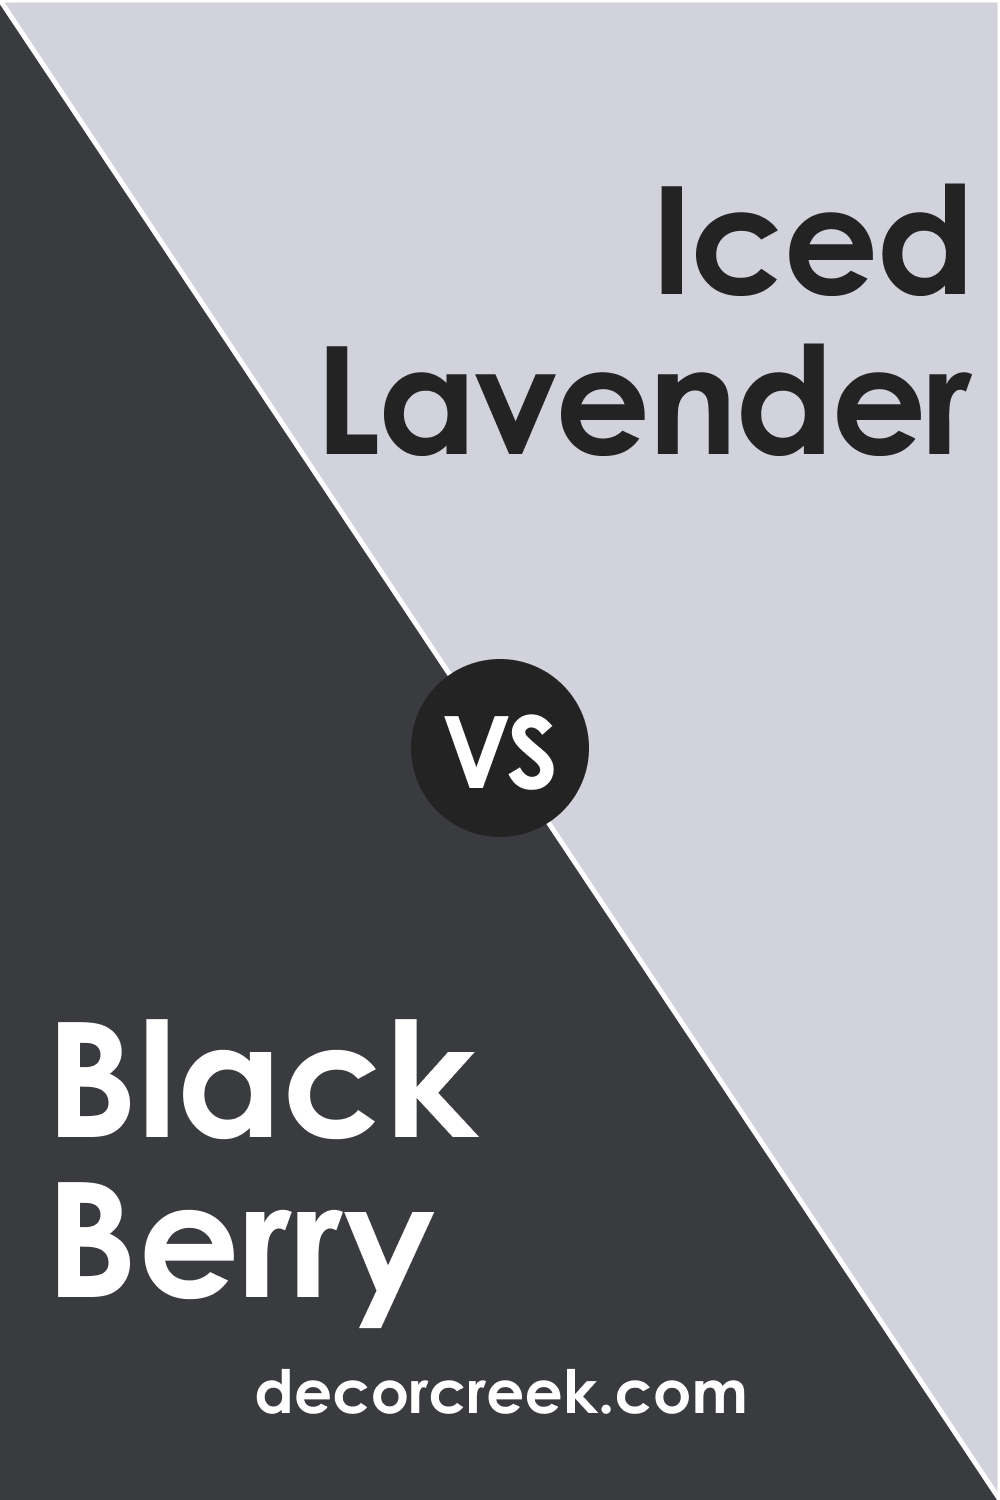 Black Berry 2119-20 vs. BM 1410 Iced Lavender